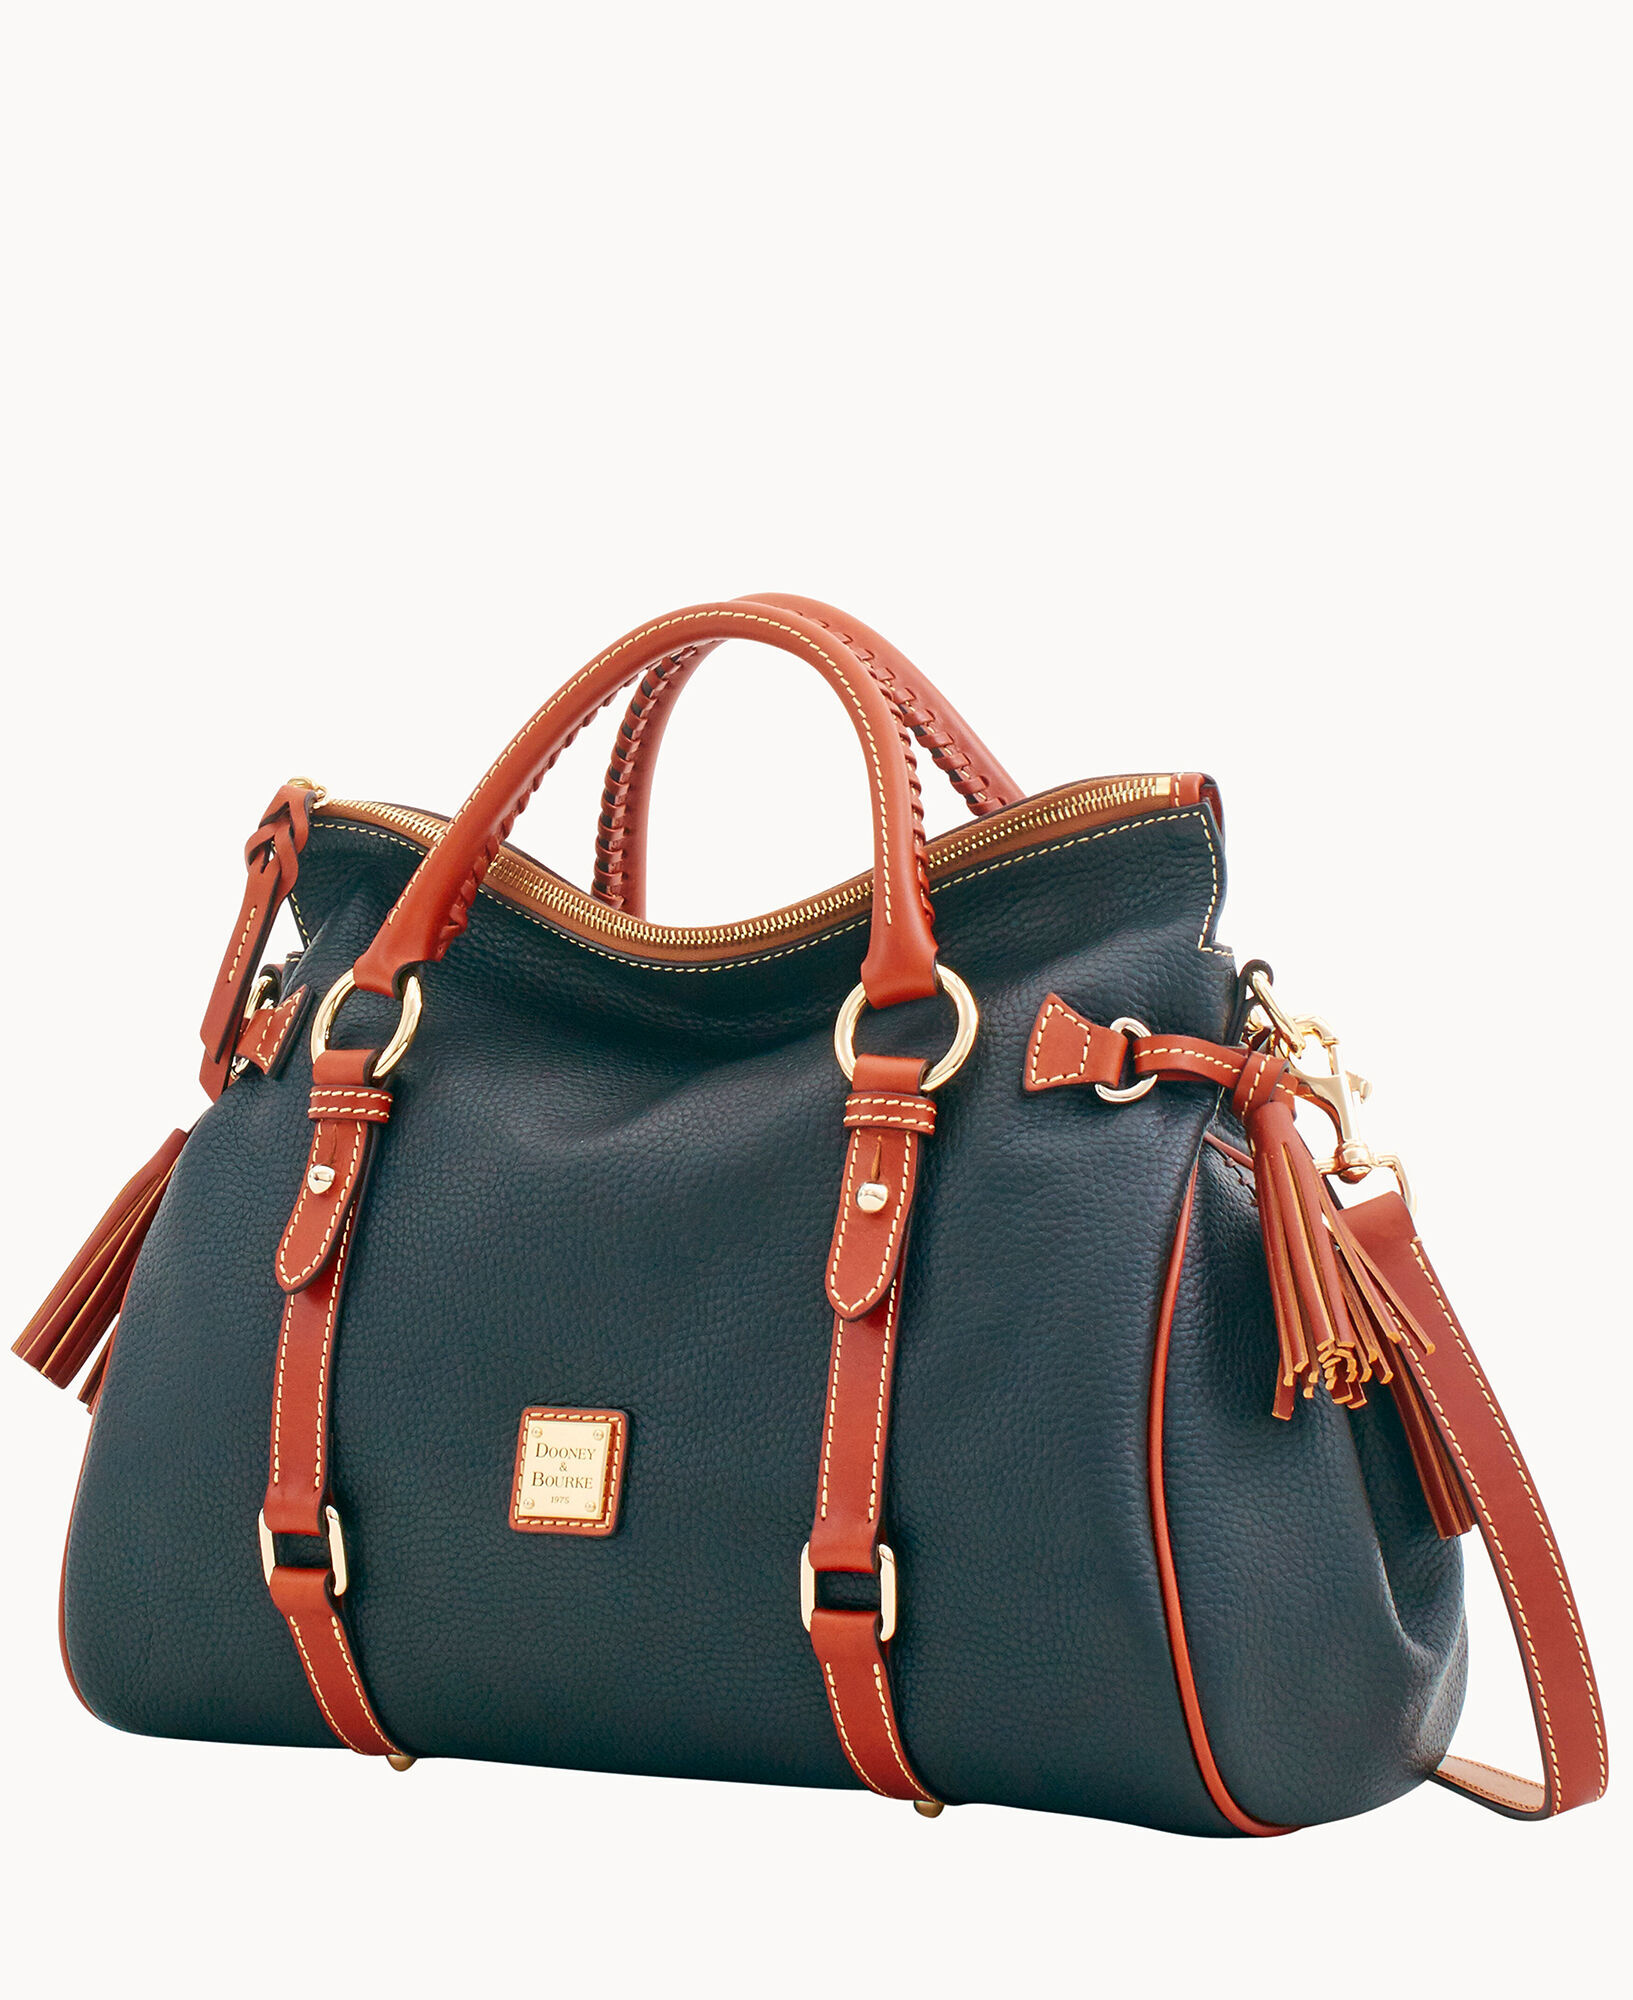 Dooney & Bourke Large Pebble Leather Shoulder Bag